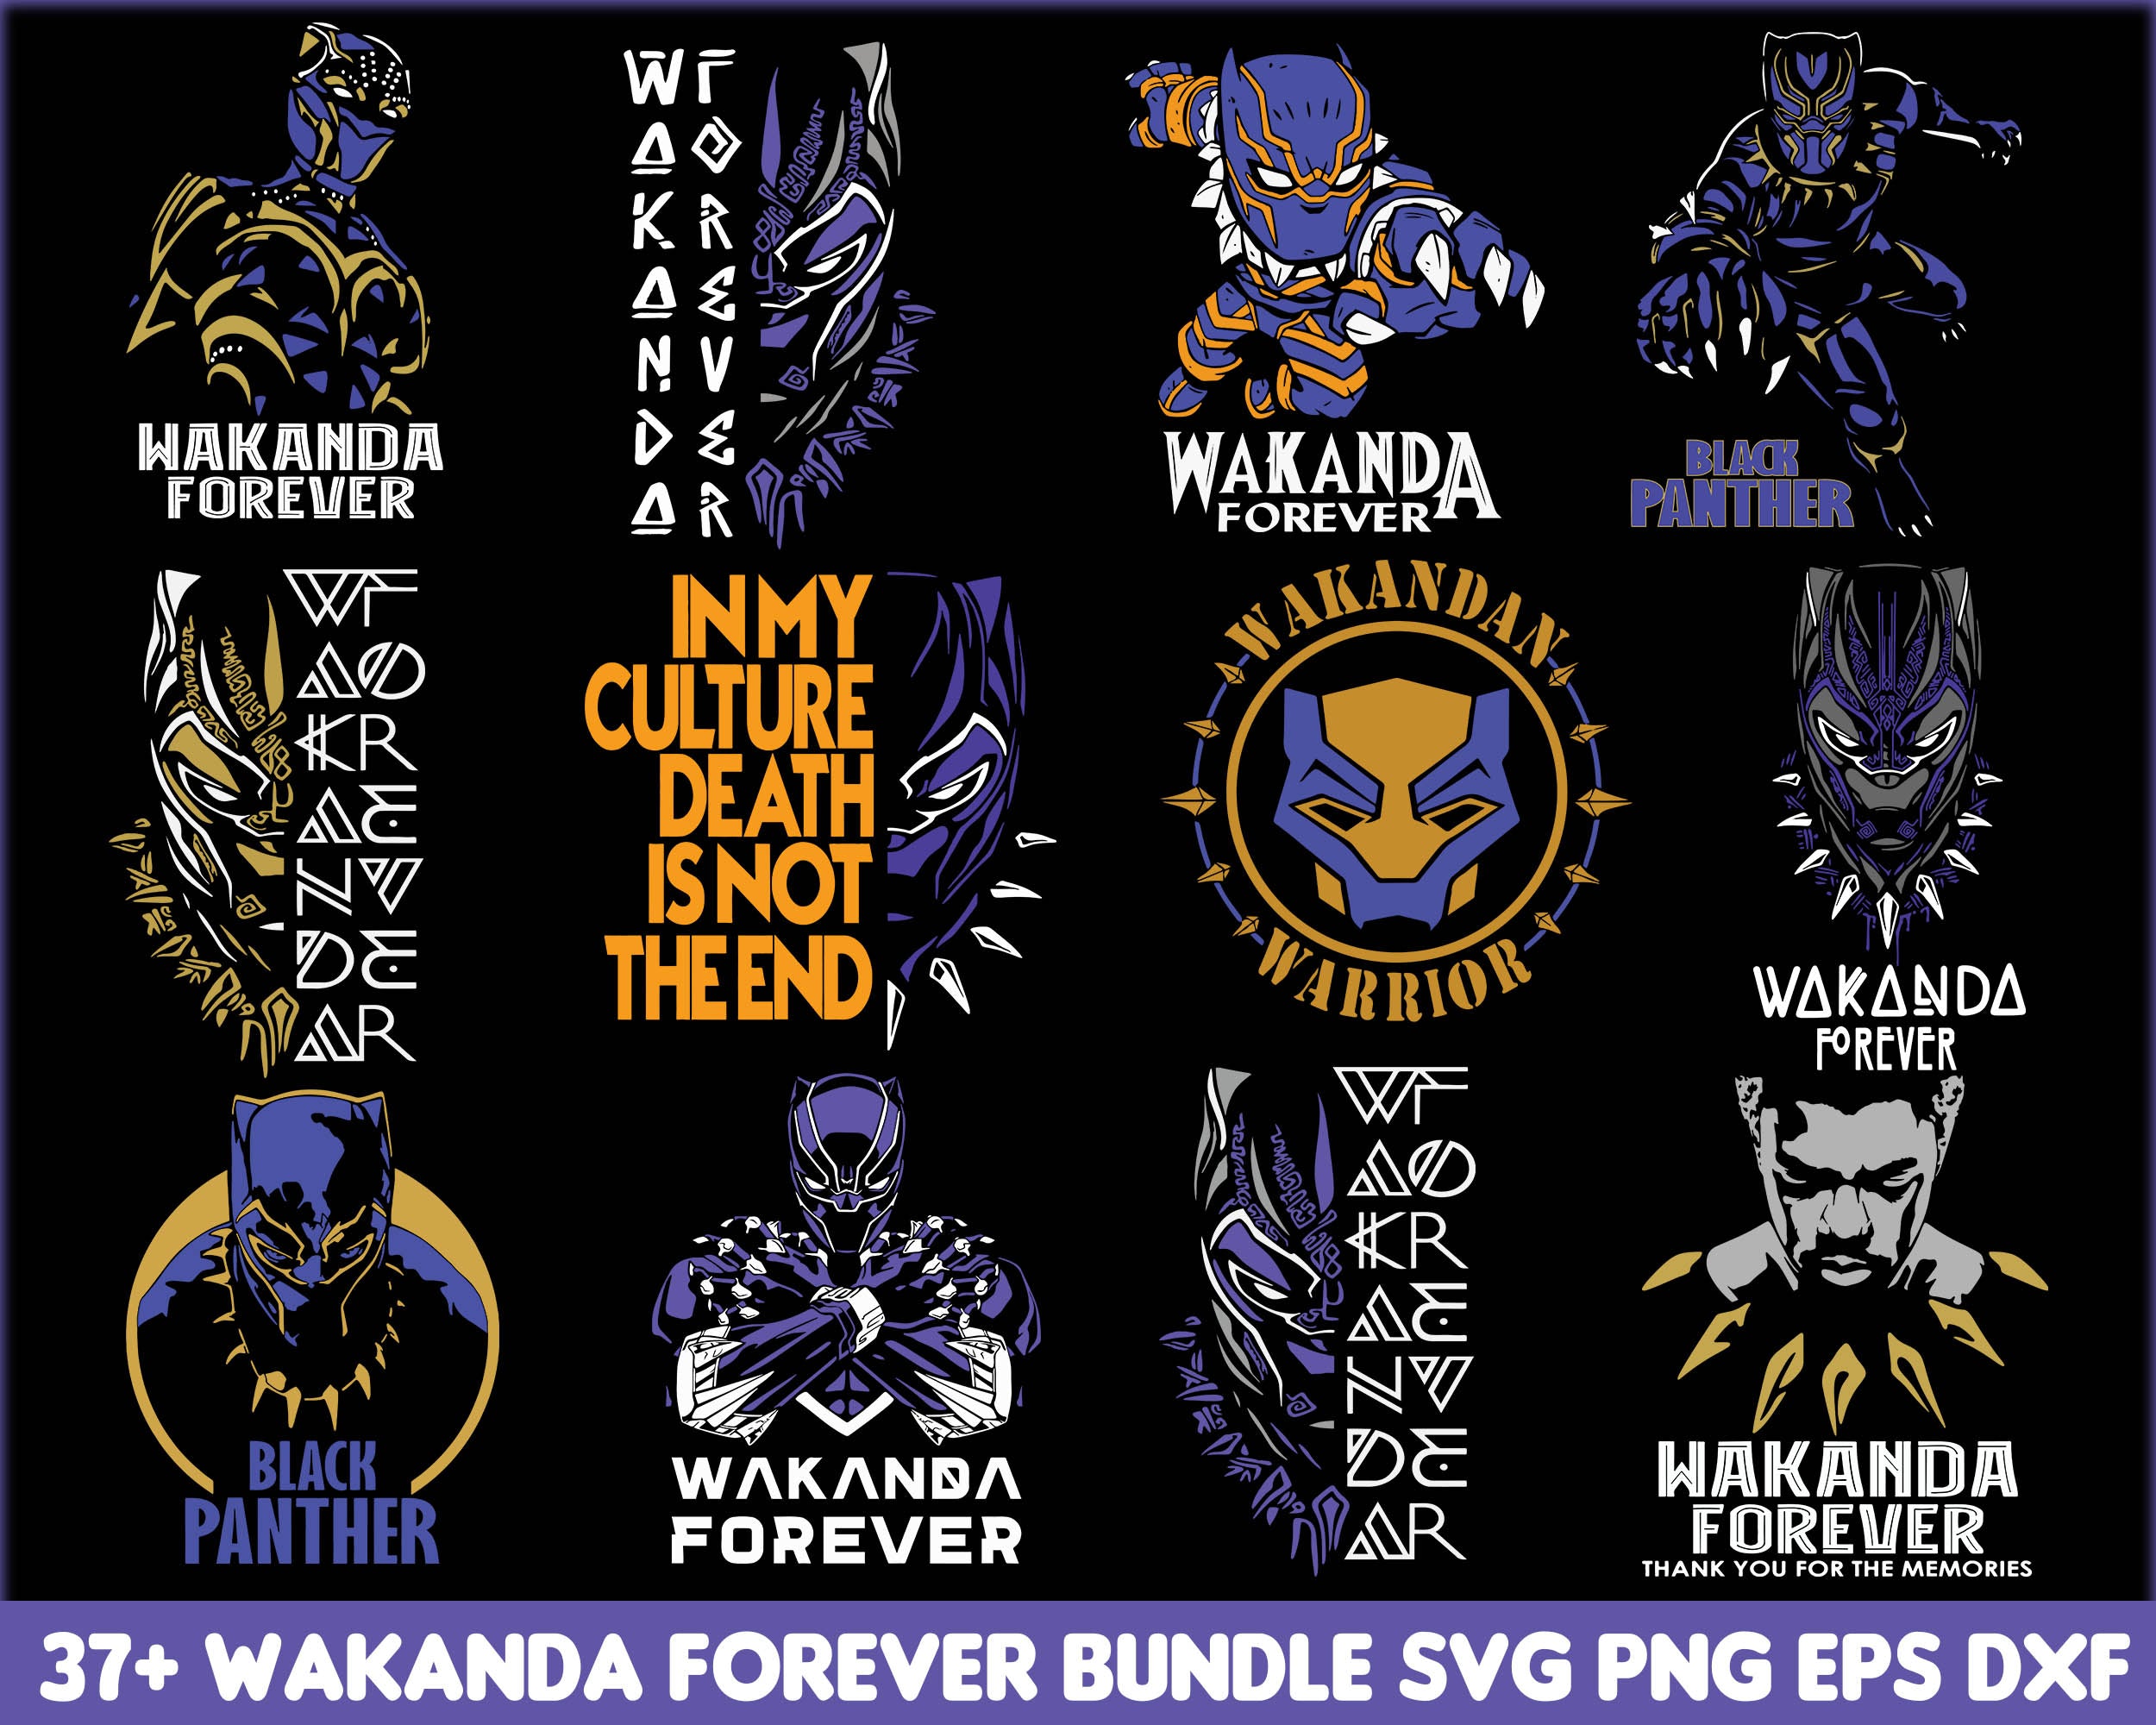 37+ Black Panther SVG PNG EPS DXF, Wakanda Forever bundle, Sublimation Design, Avenger svg bundle, Marvel bundle svg, Digital download